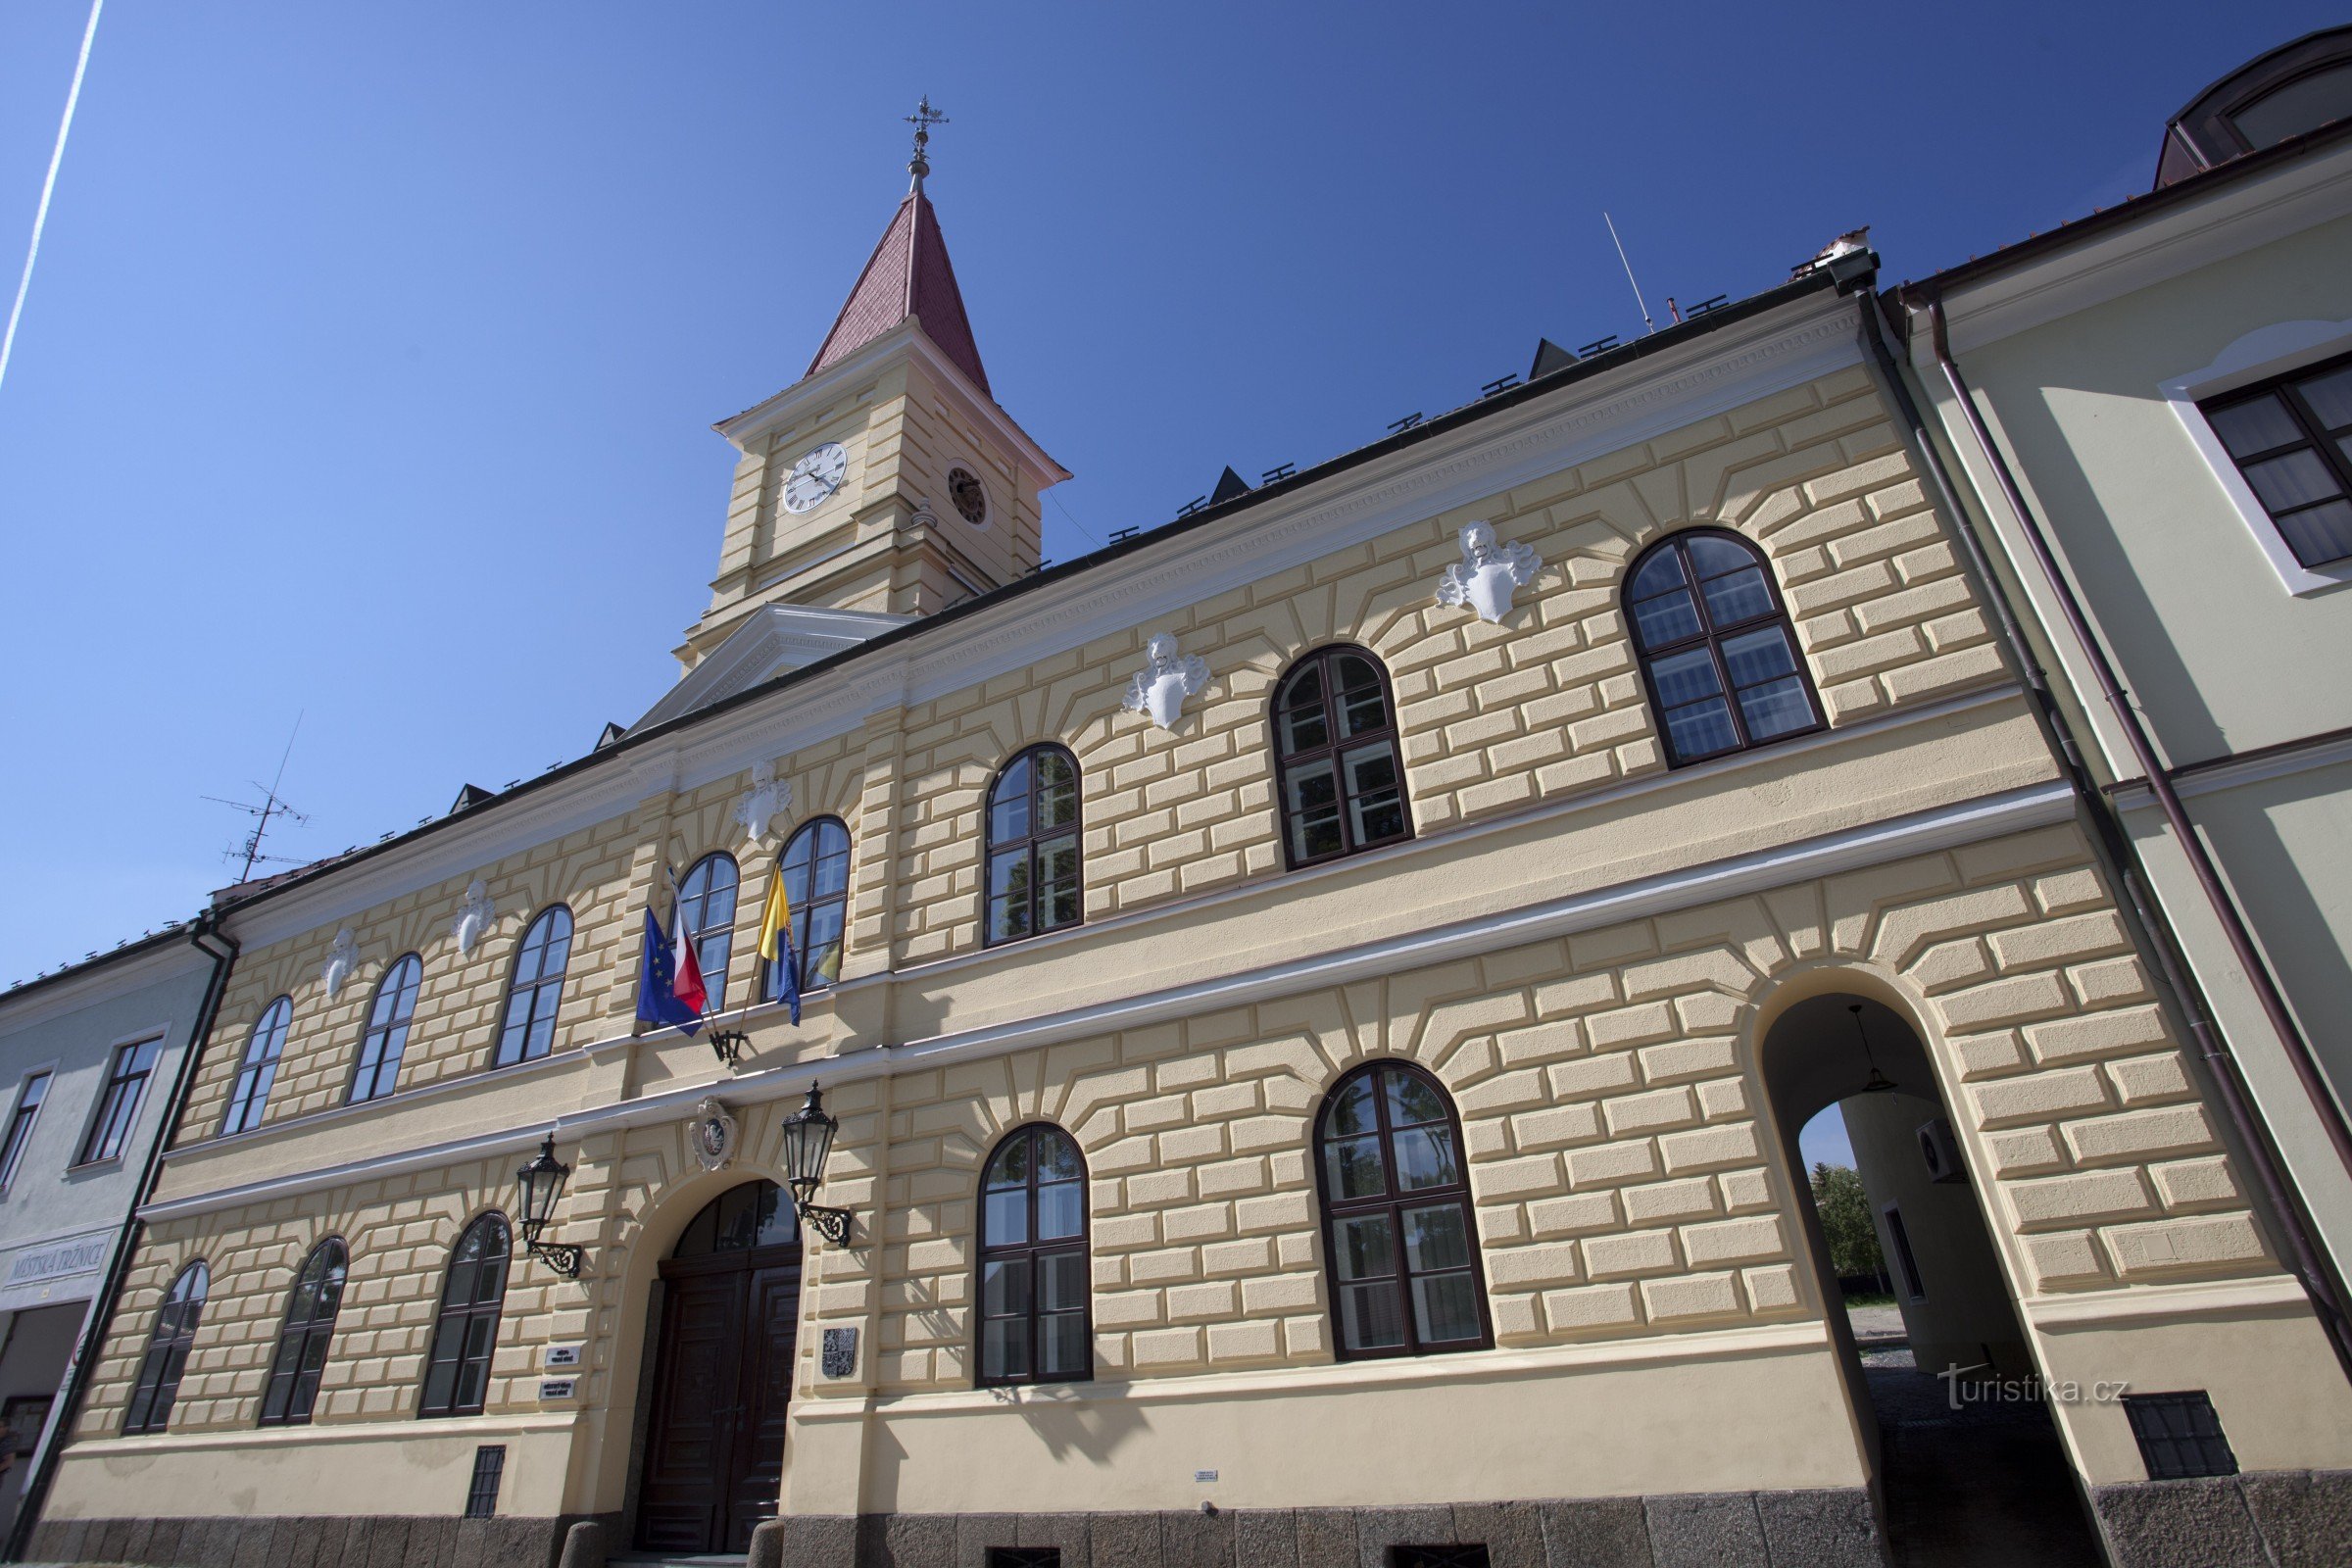 The city of Velká Biteš